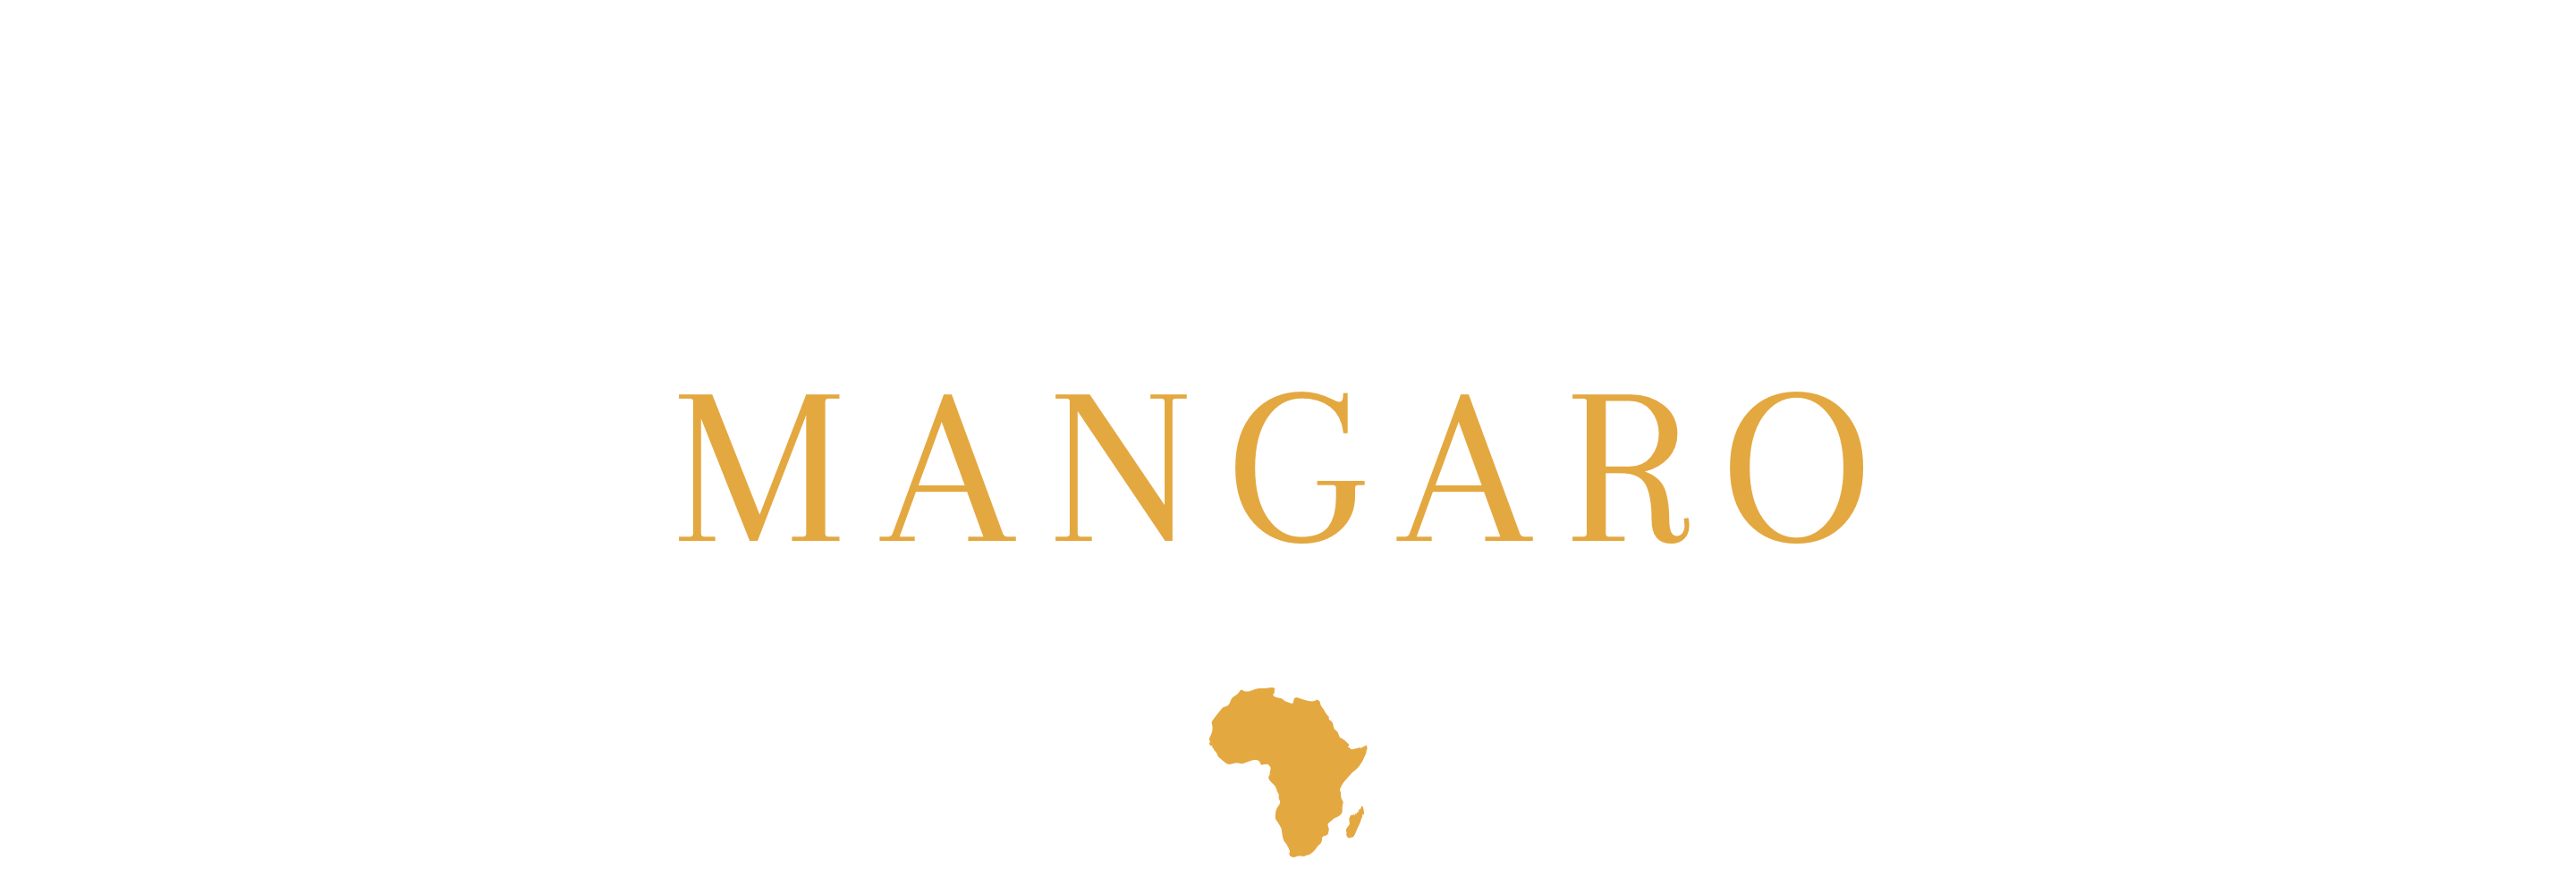 mangaro